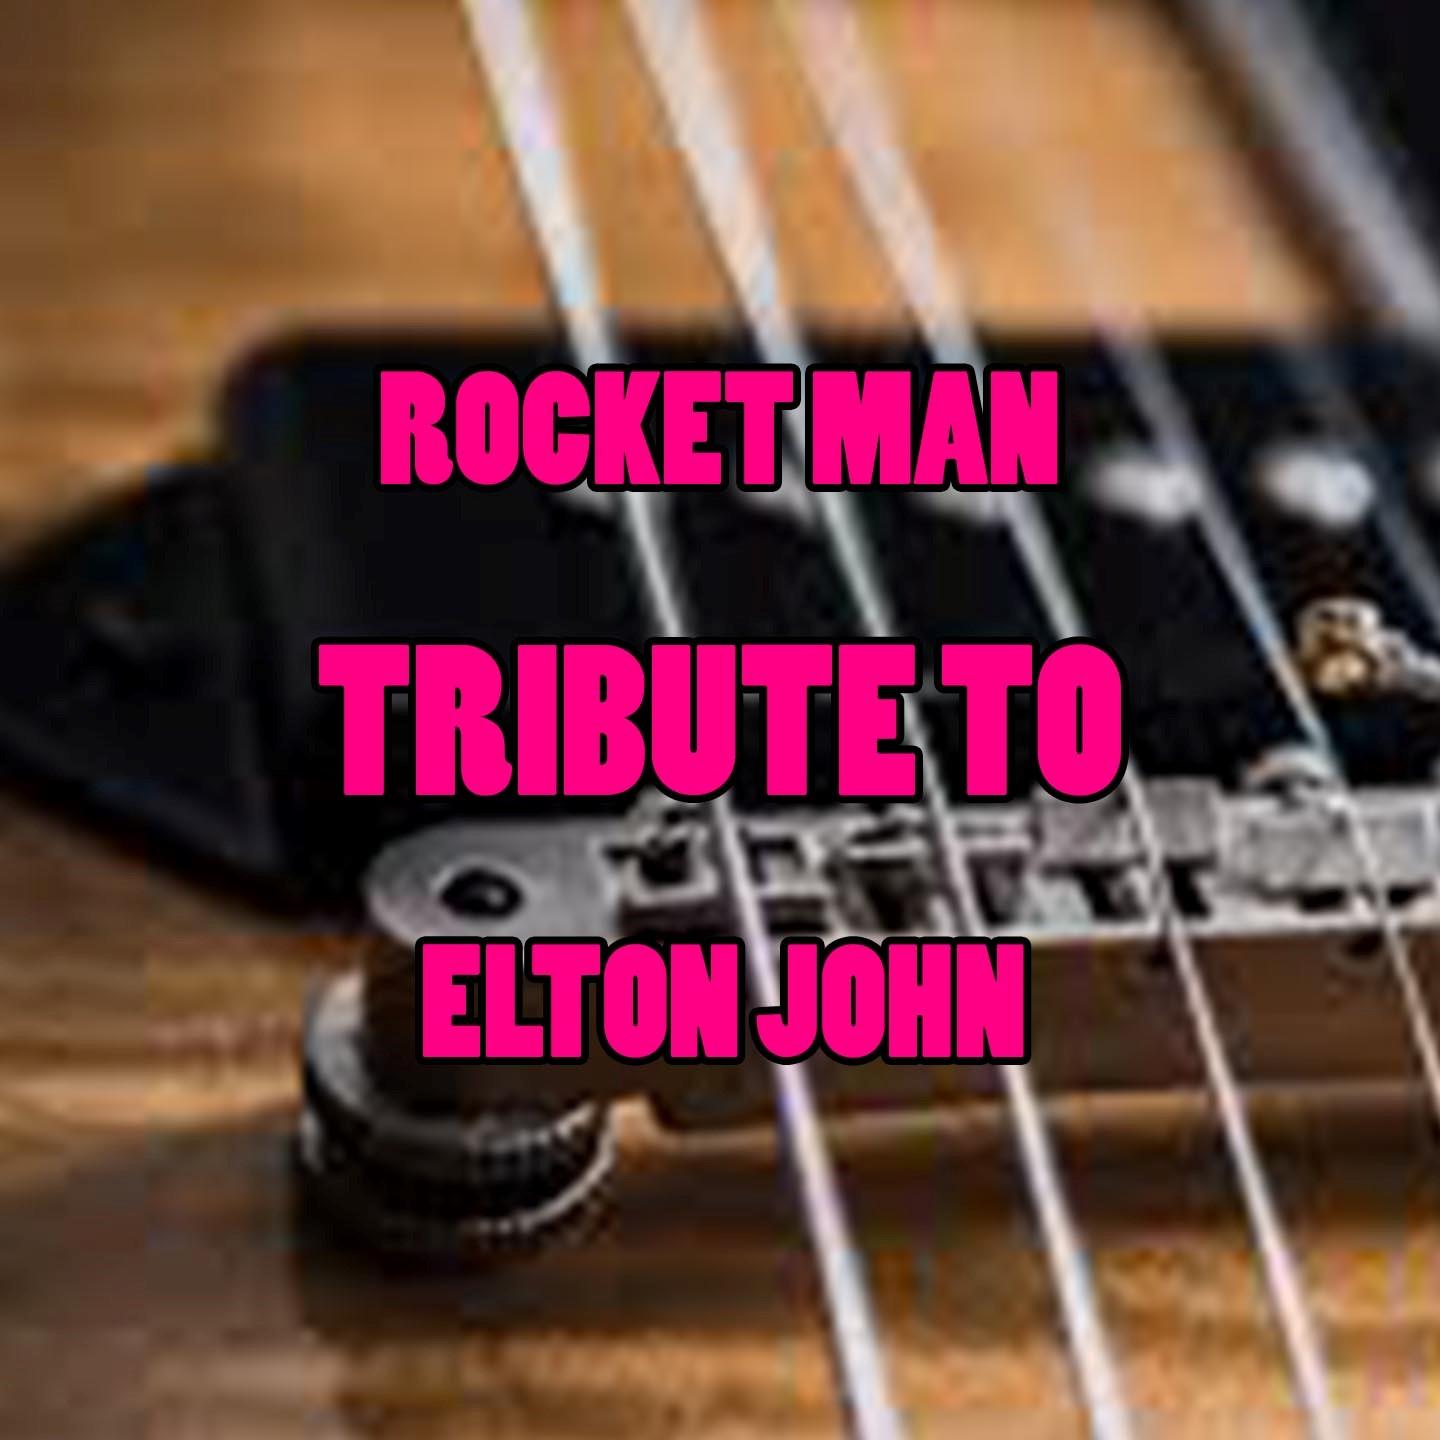 Rocket Man (Tribute To Elton John)